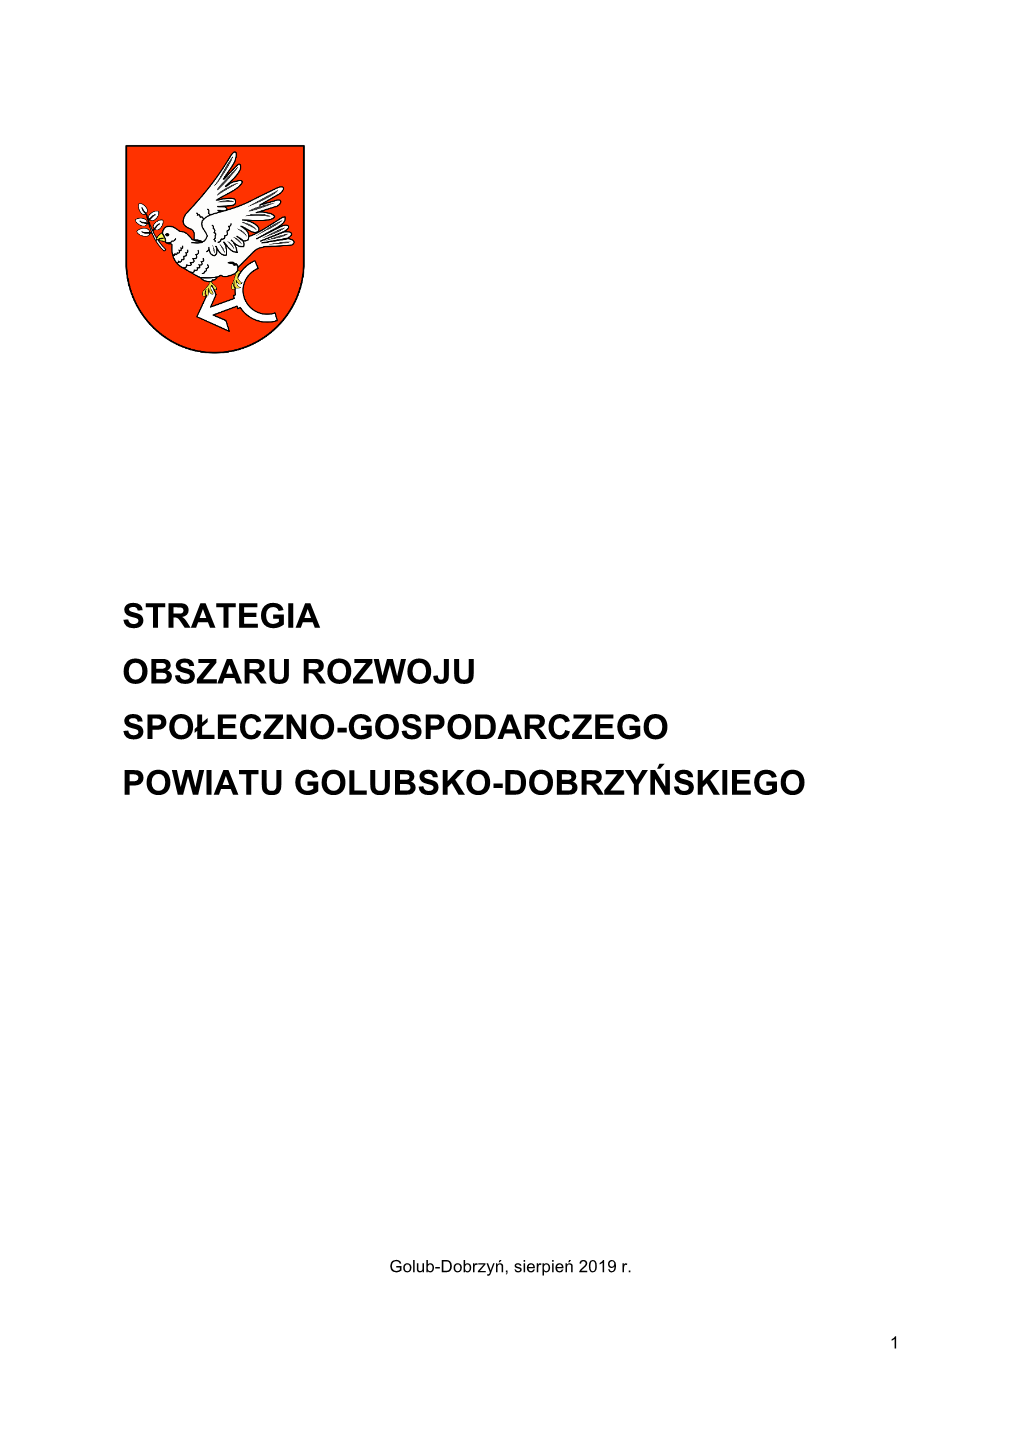 Strategia ORSG Powiatu Golubsko-Dobrzyńskiego